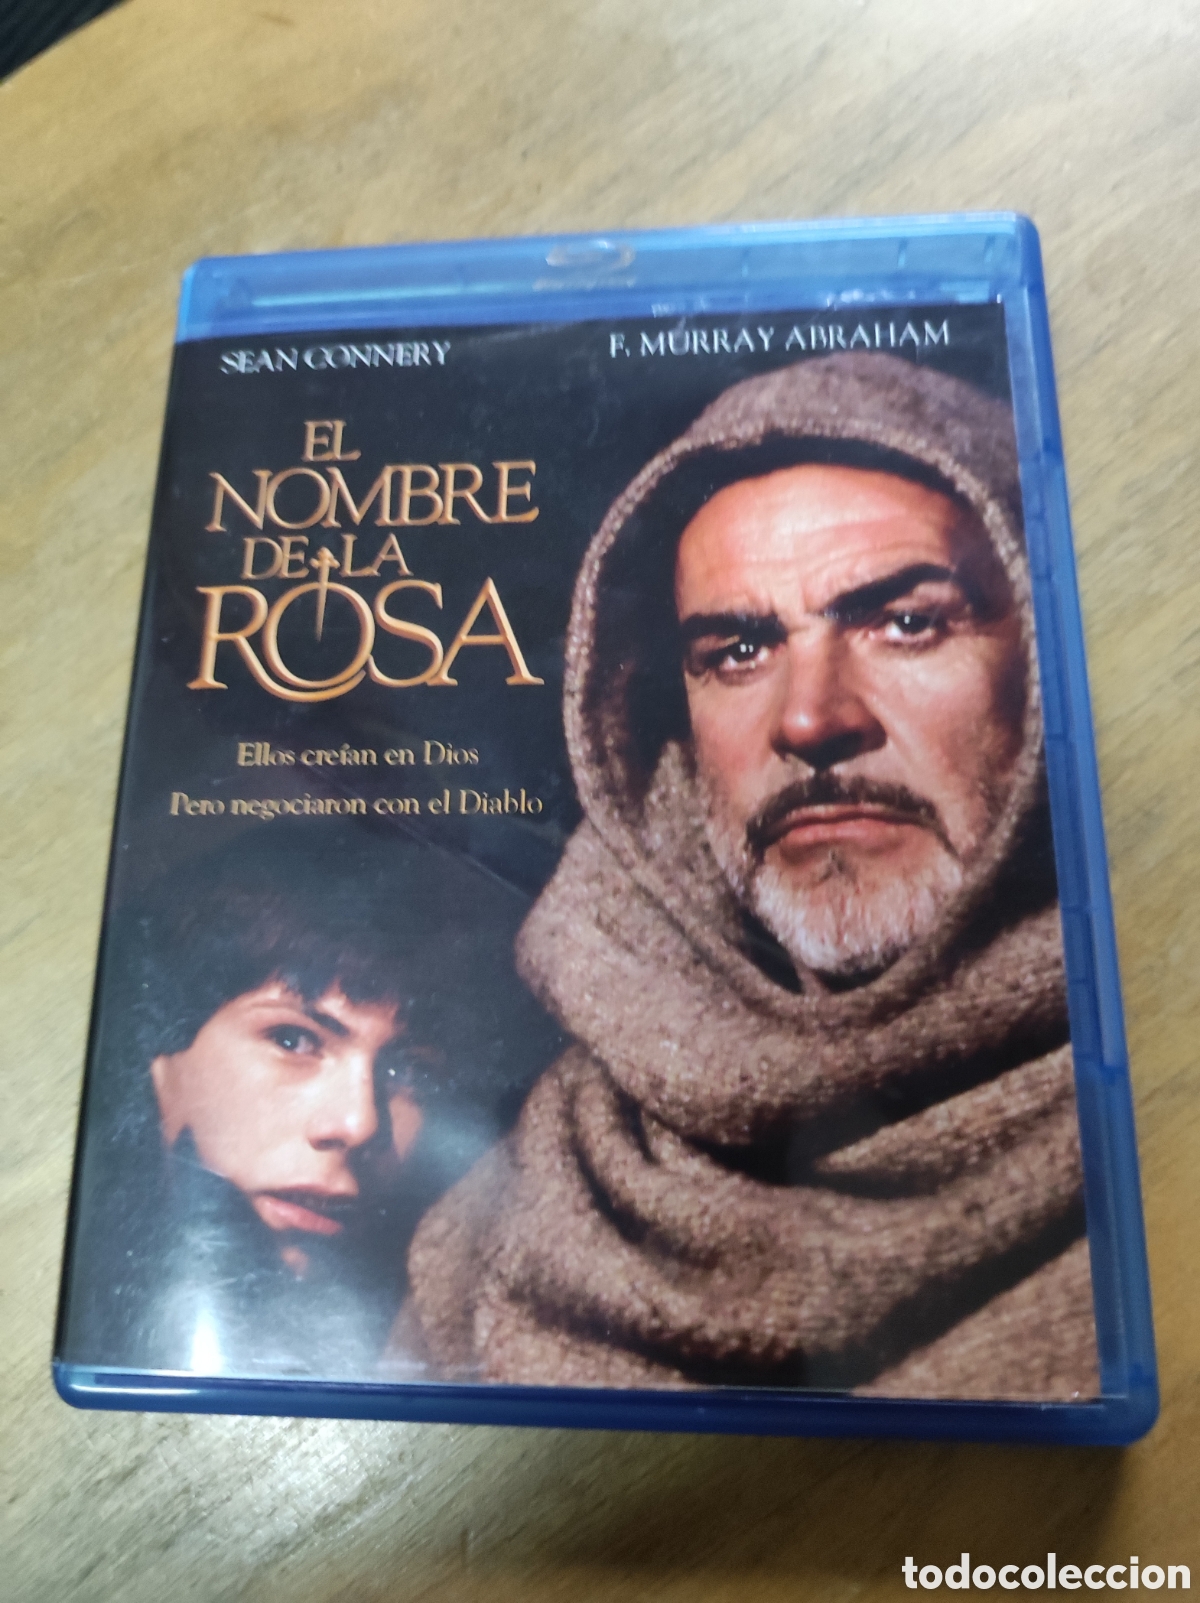 El nombre de la rosa - Blu-Ray